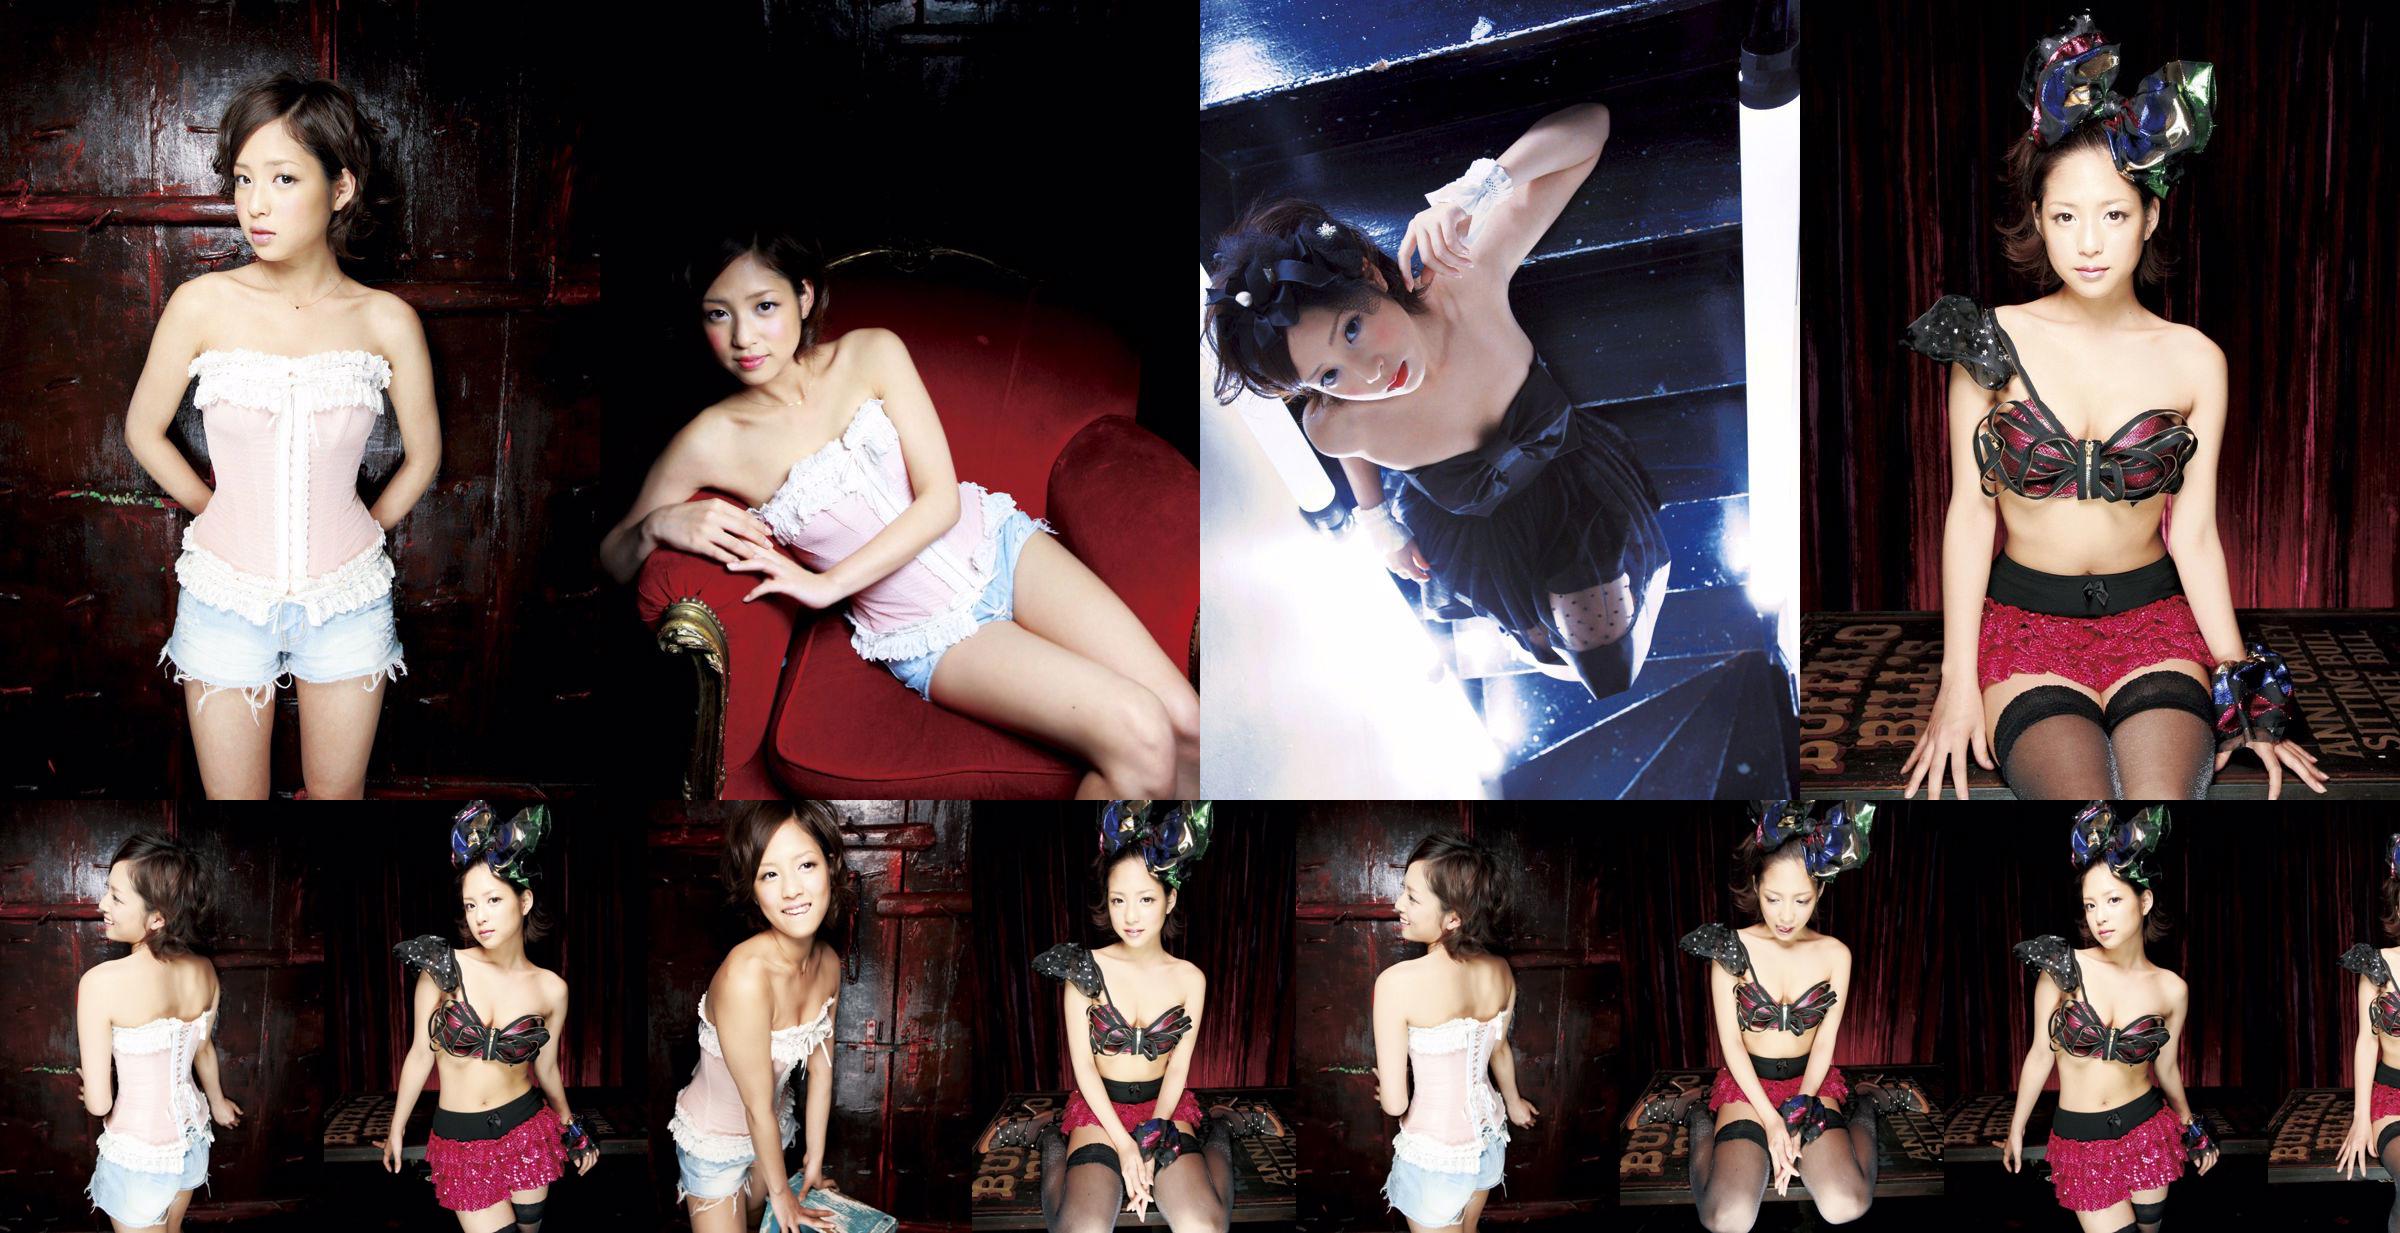 [Sabra.net] Orihara Miyu Moulin Rouge No.503b1f Pagina 1